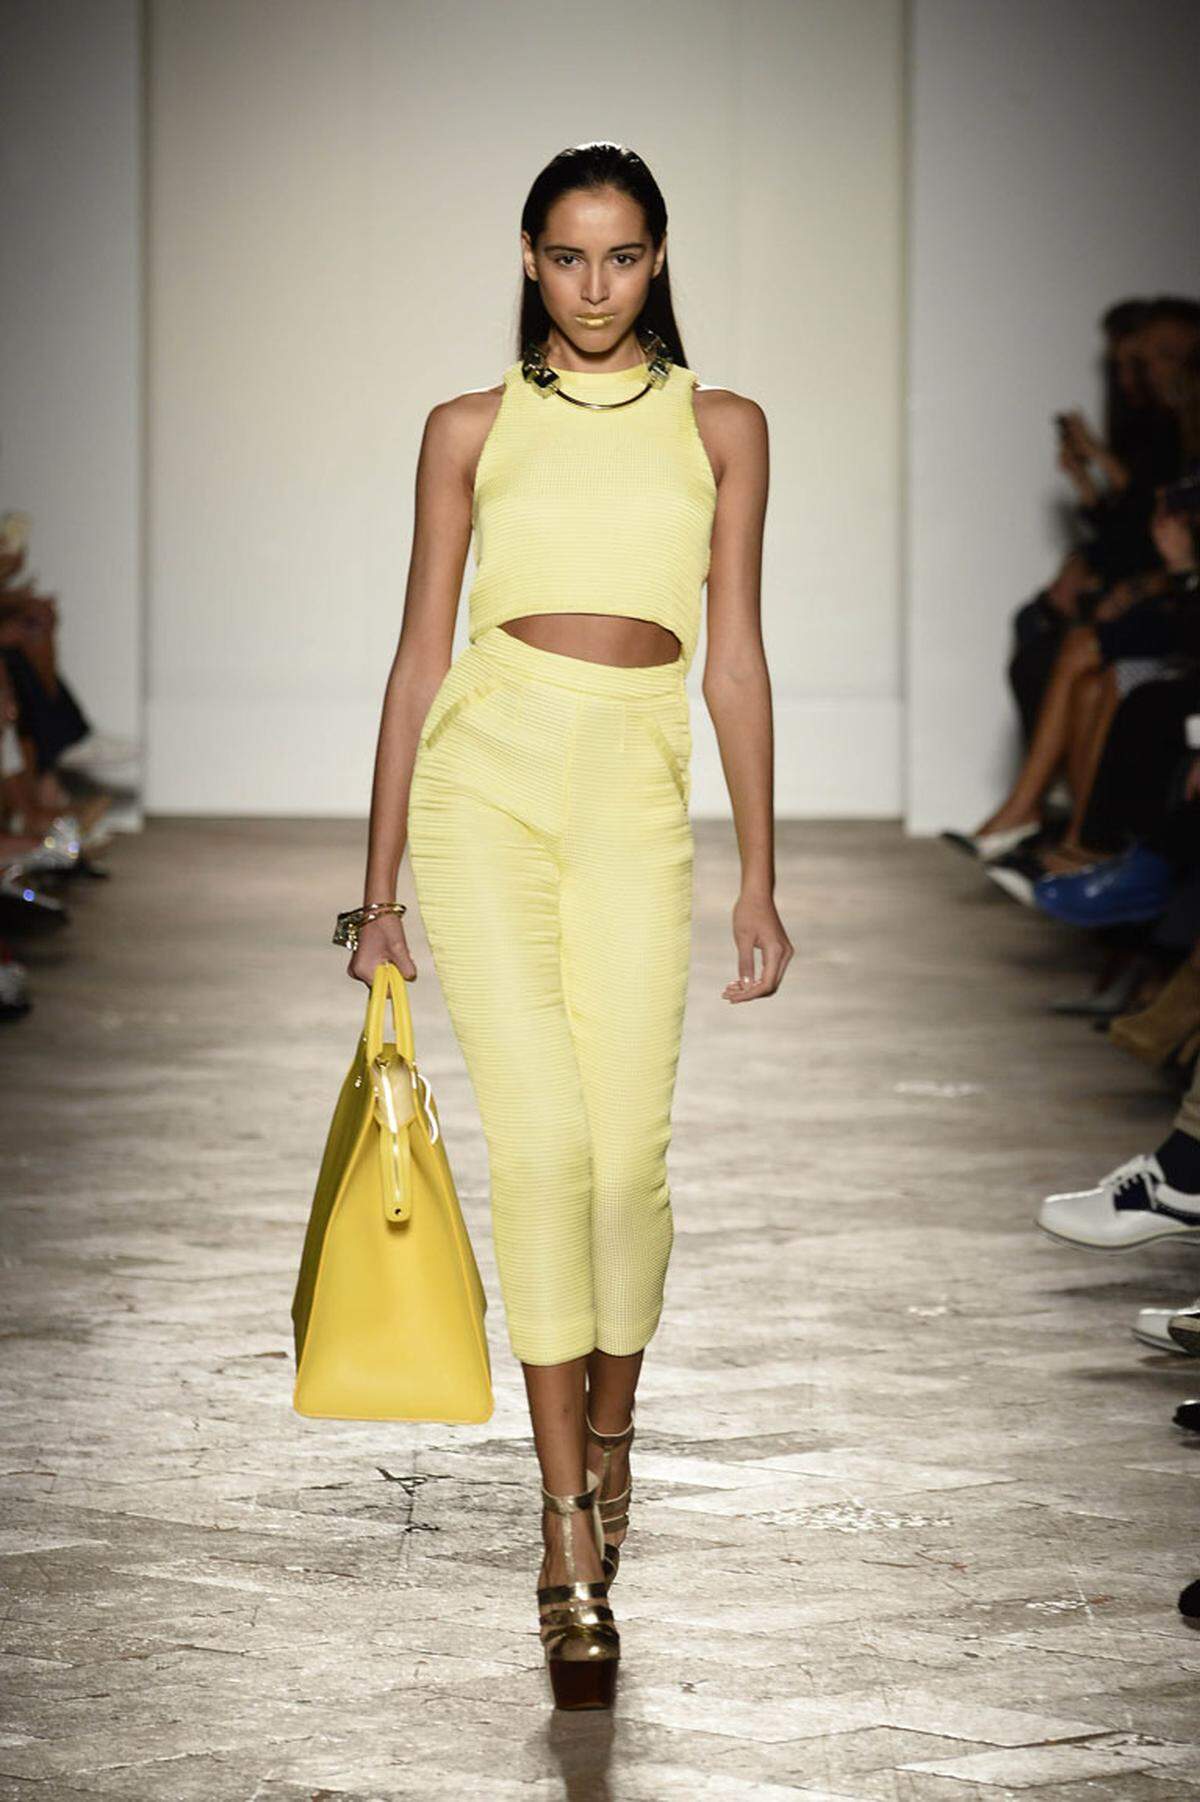 Gelb verbreitet österliche Stimmung ist auch in den Kollektionen der Modehäuser nicht wegzudenken. Im Komplett-Look trägt man Gelb etwa bei Aigner.